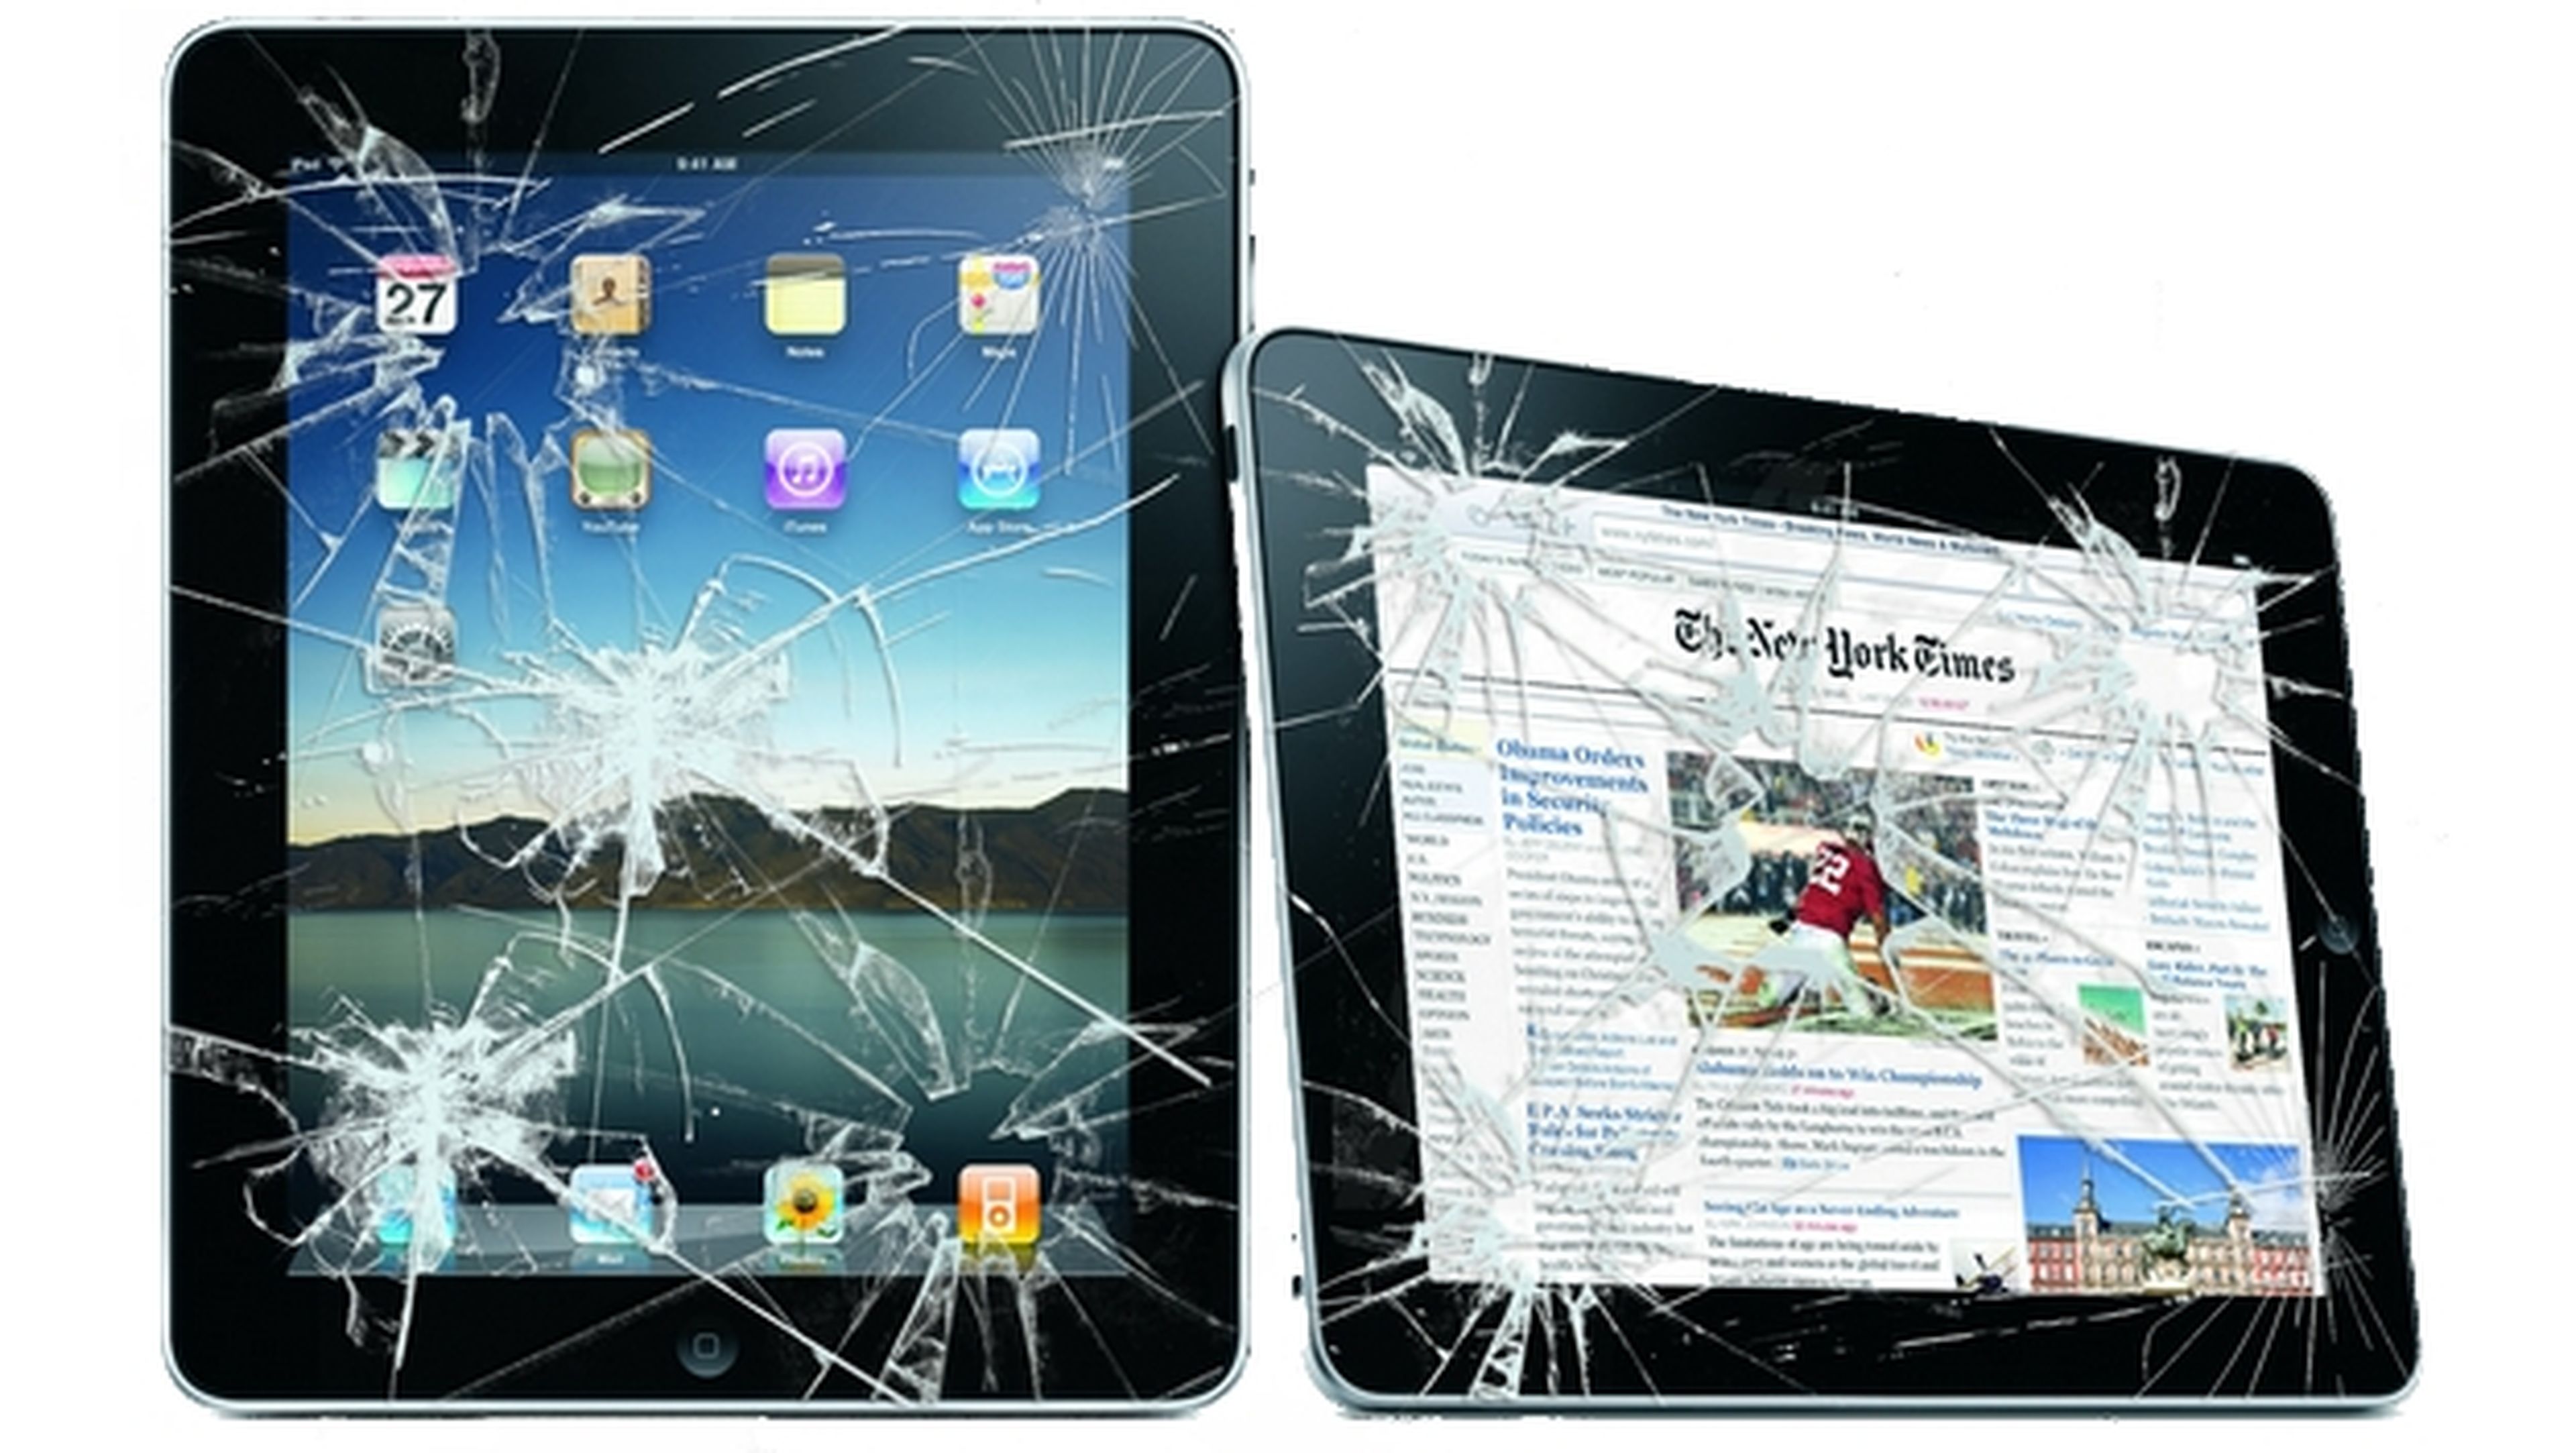 La obsolescencia programada quiere jubilar tu iPad 4.